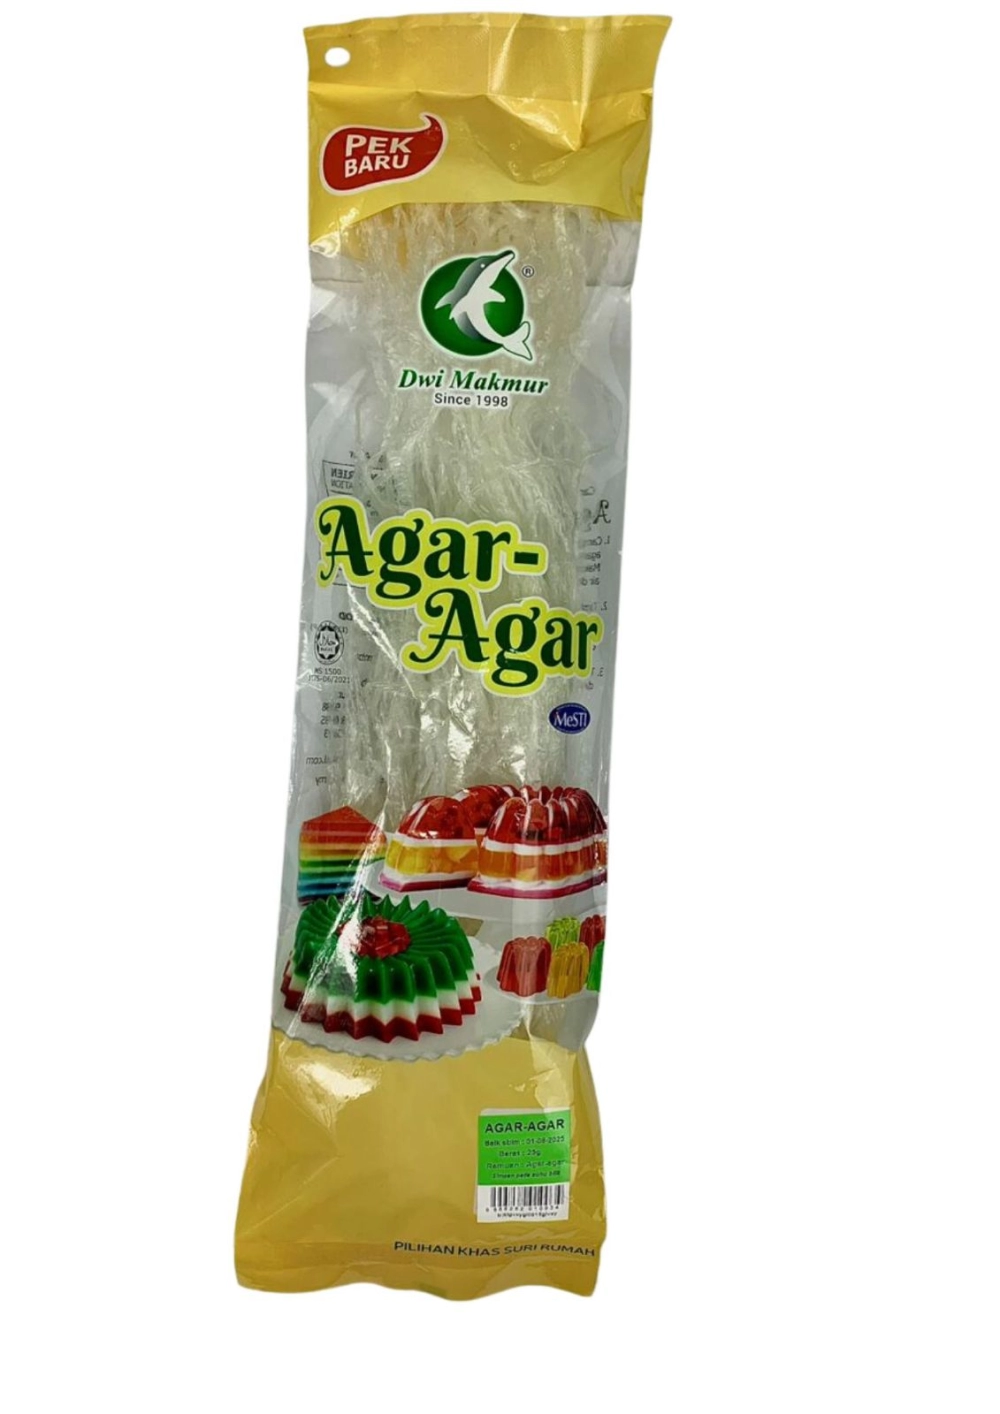 AGAR-AGAR 25G RM4.00 C.DWI MAKMUR